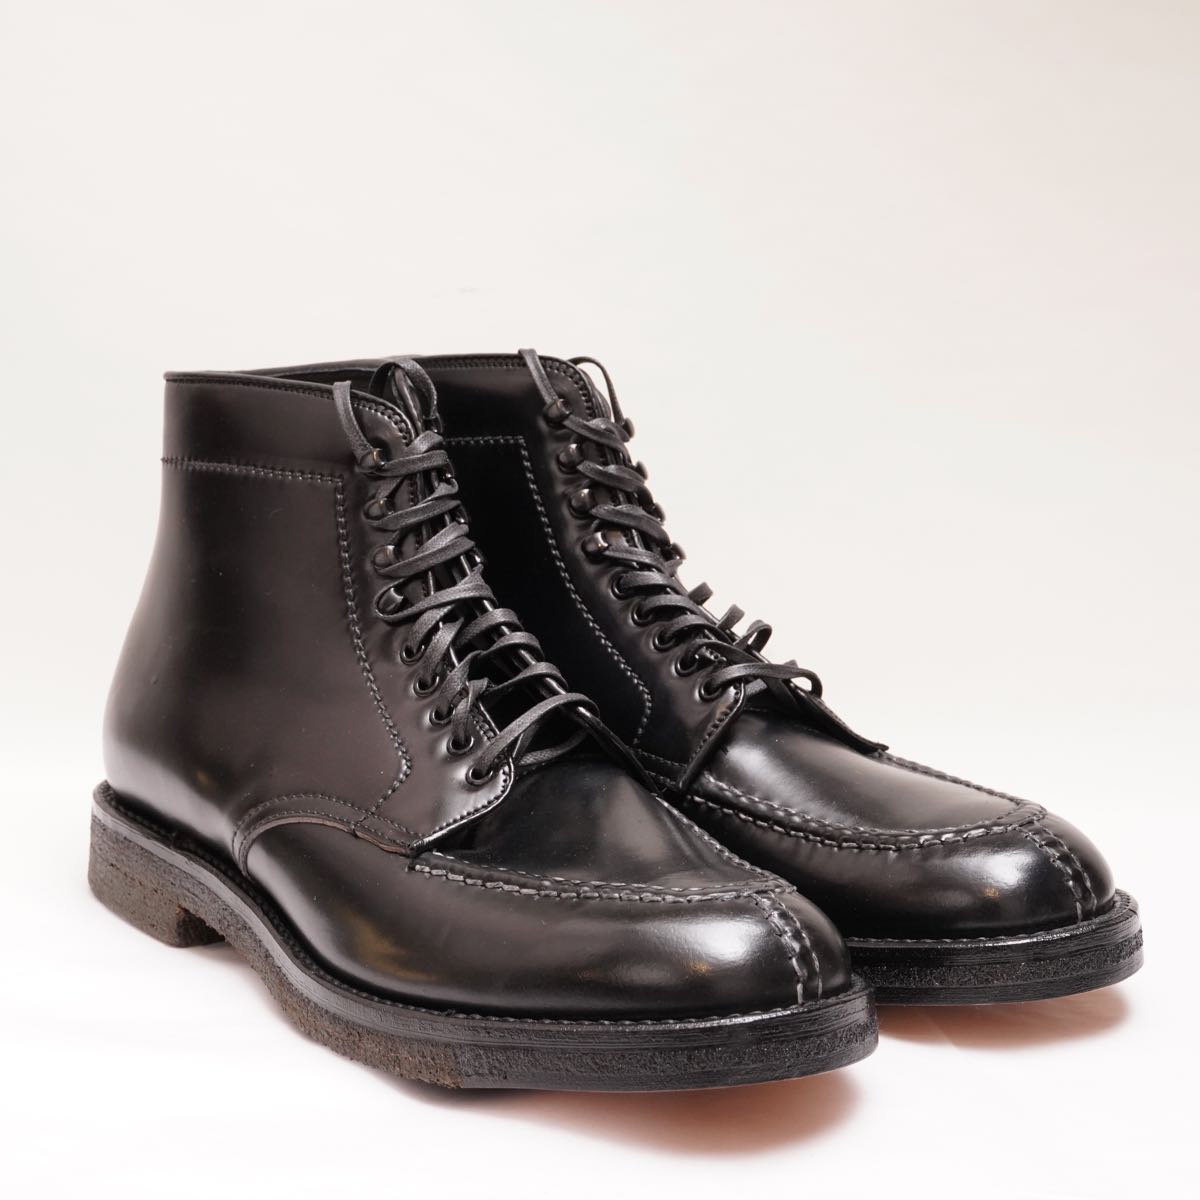 なしオールデン Alden ブーツ ショートブーツ タンカーブーツ N3811H カーフレザー シューズ メンズ 10.5(28.5cm相当) ブラック